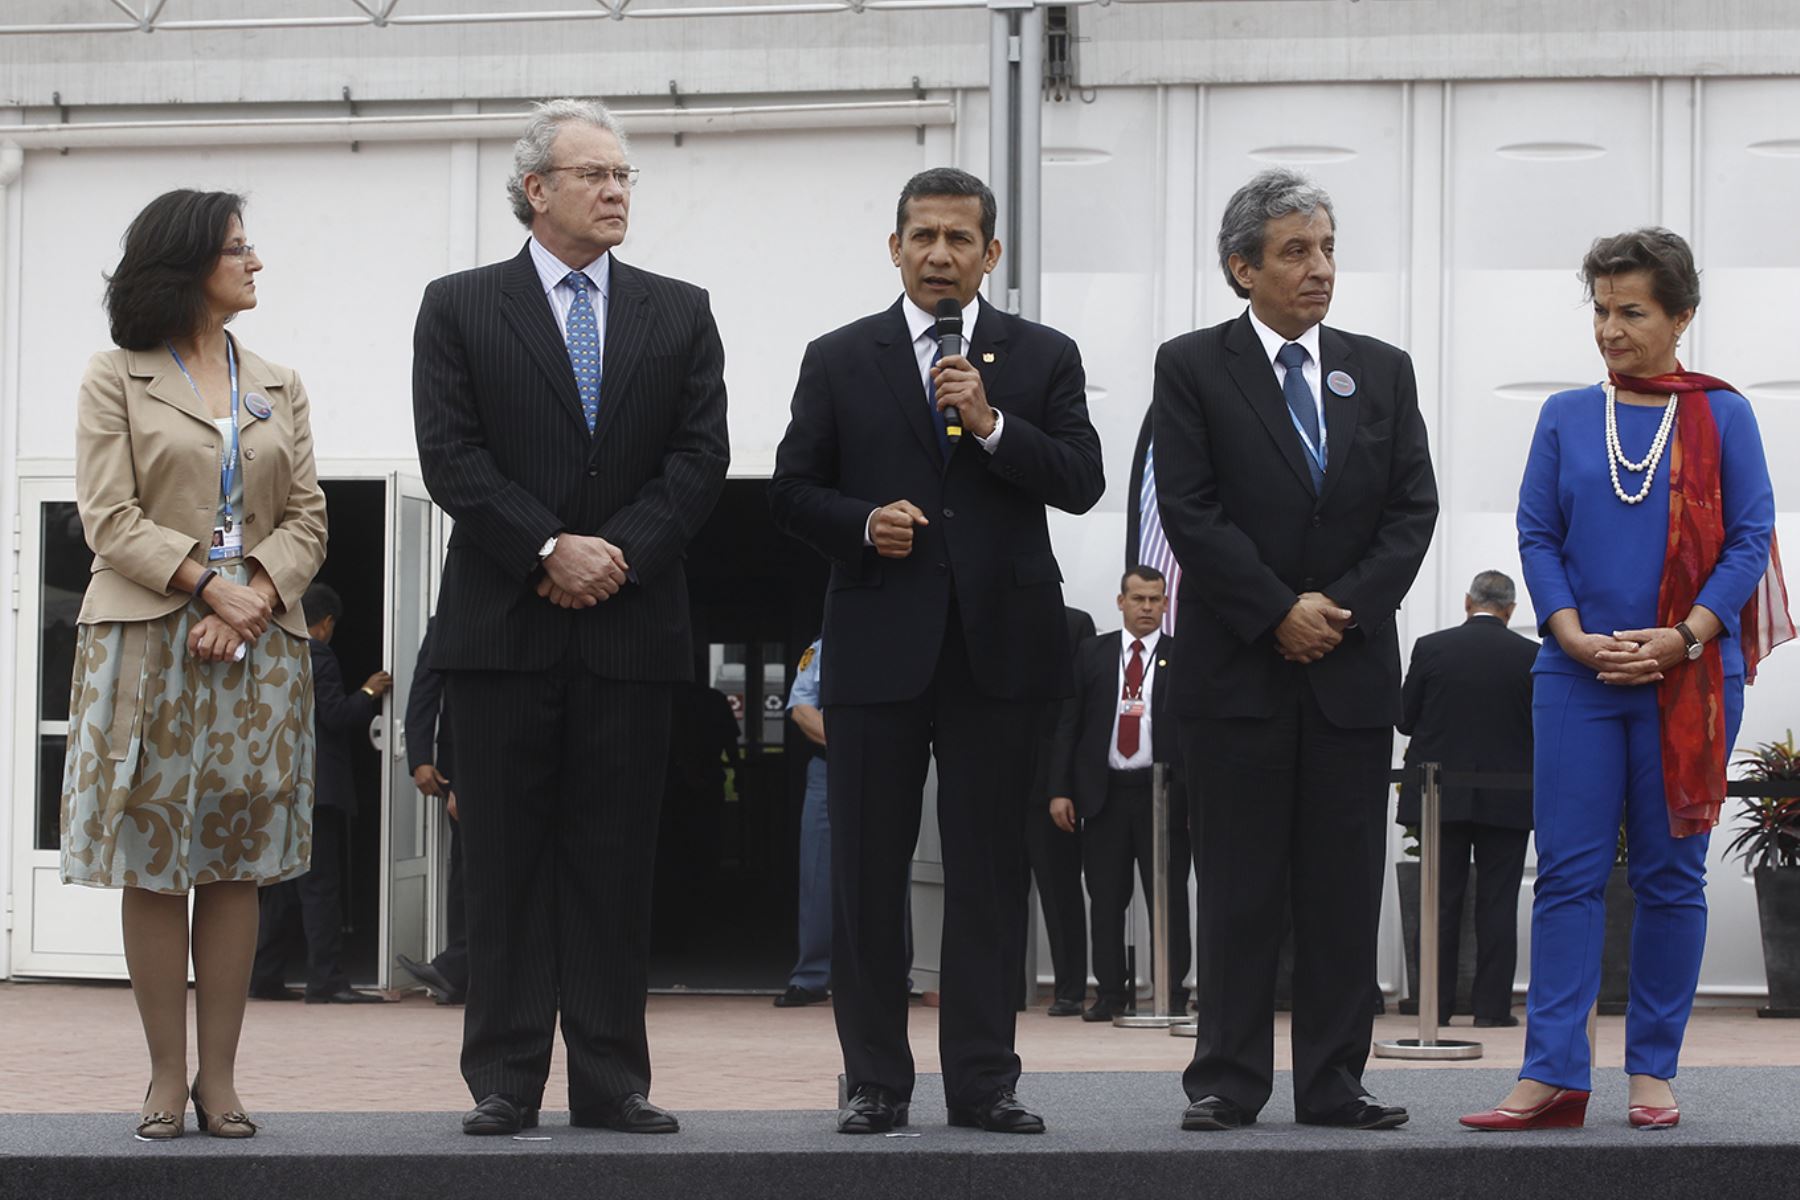 LIMA, PERÚ - NOVIEMBRE 28. Presidente Humala participa en ceremonia de entrega de instalaciones para la COP20.Foto: ANDINA/Juan Carlos Guzmán Negrini.